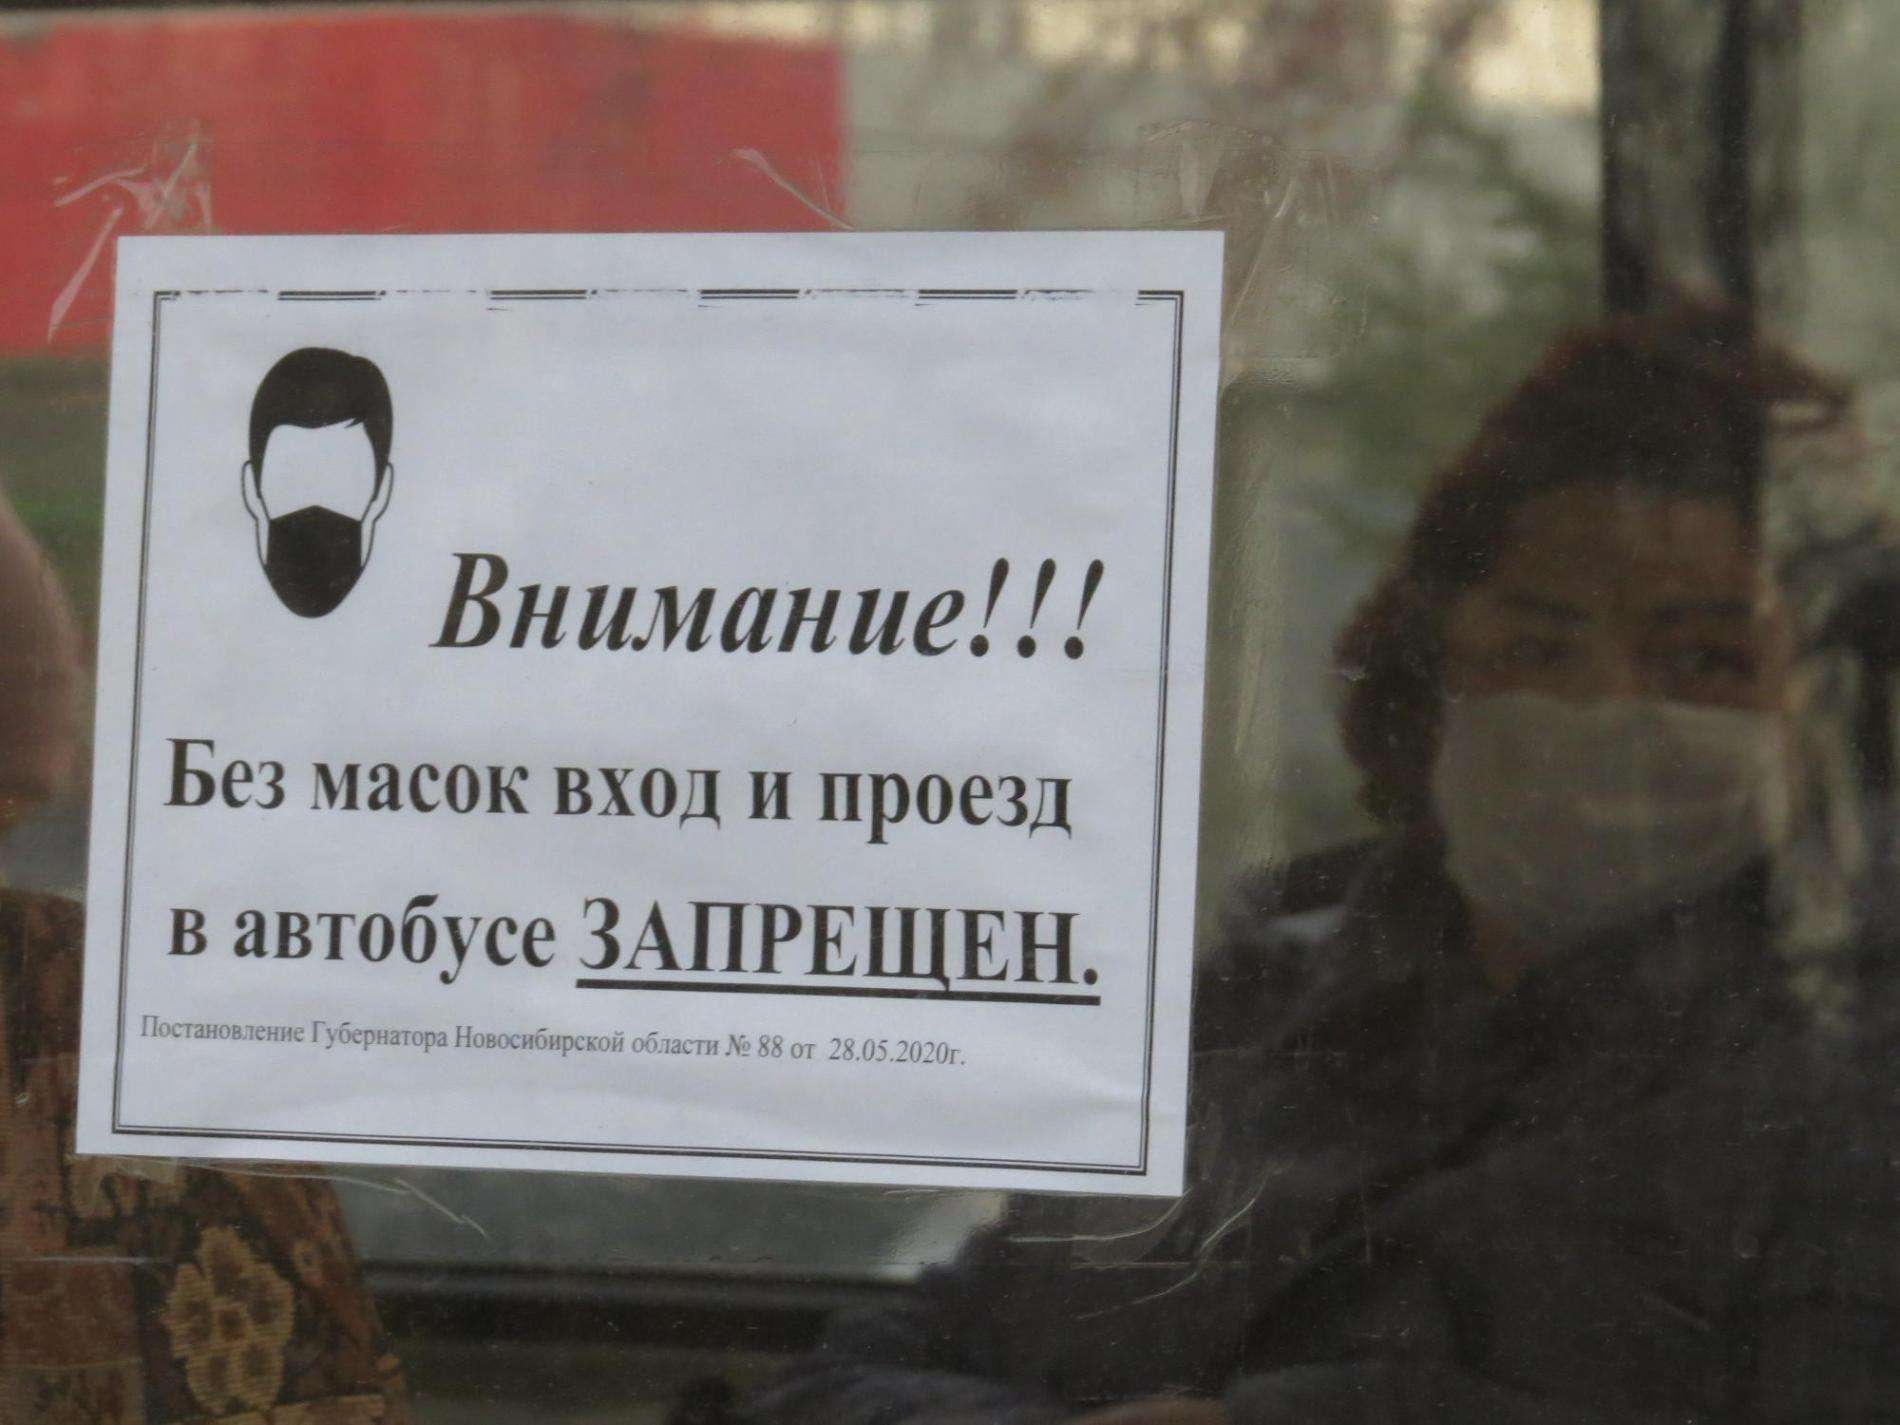 Штрафы от 1000 до 15000 рублей получили жители Бердска за отсутствие масок на лице